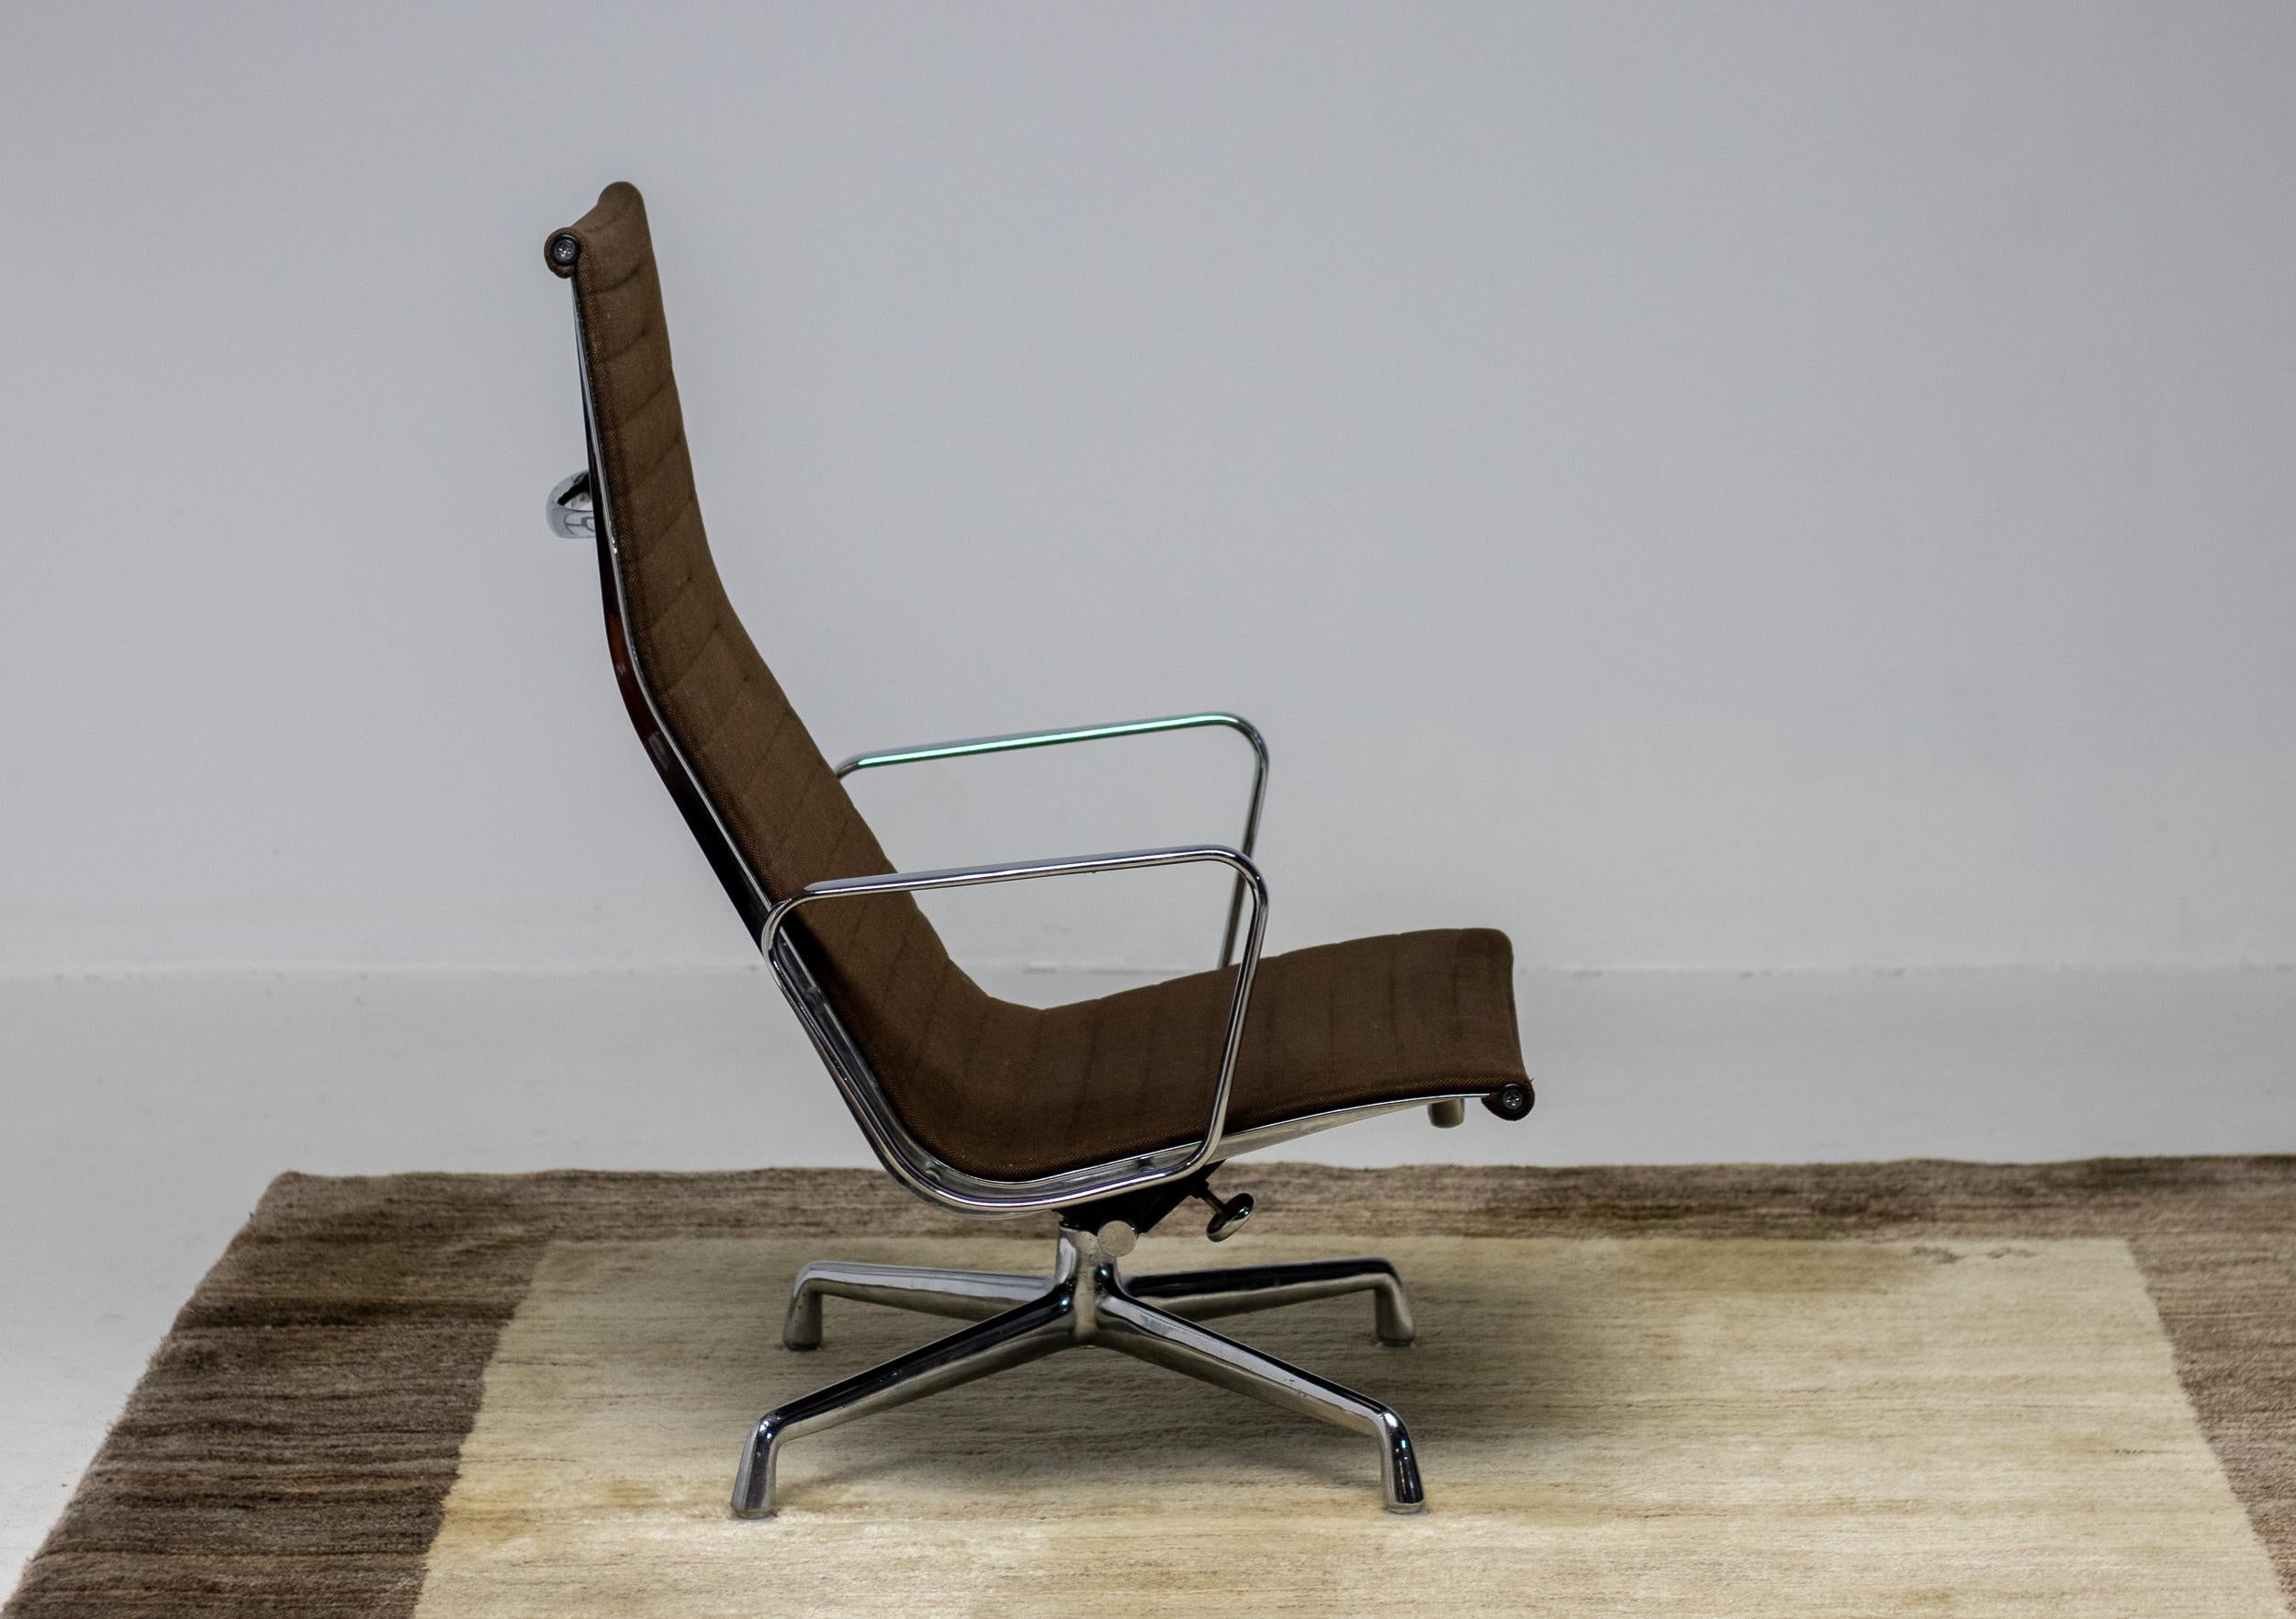 Eames Aluminium Gruppe Lounge Stuhl EA 124 zweifarbig dunkelbraun Hopsak Stoff, hergestellt von Herman Miller. Der Stuhl ist aus verchromtem Aluminium gefertigt, drehbar und hat einen verstellbaren Kippmechanismus. 
Begehrenswerte, sehr frühe